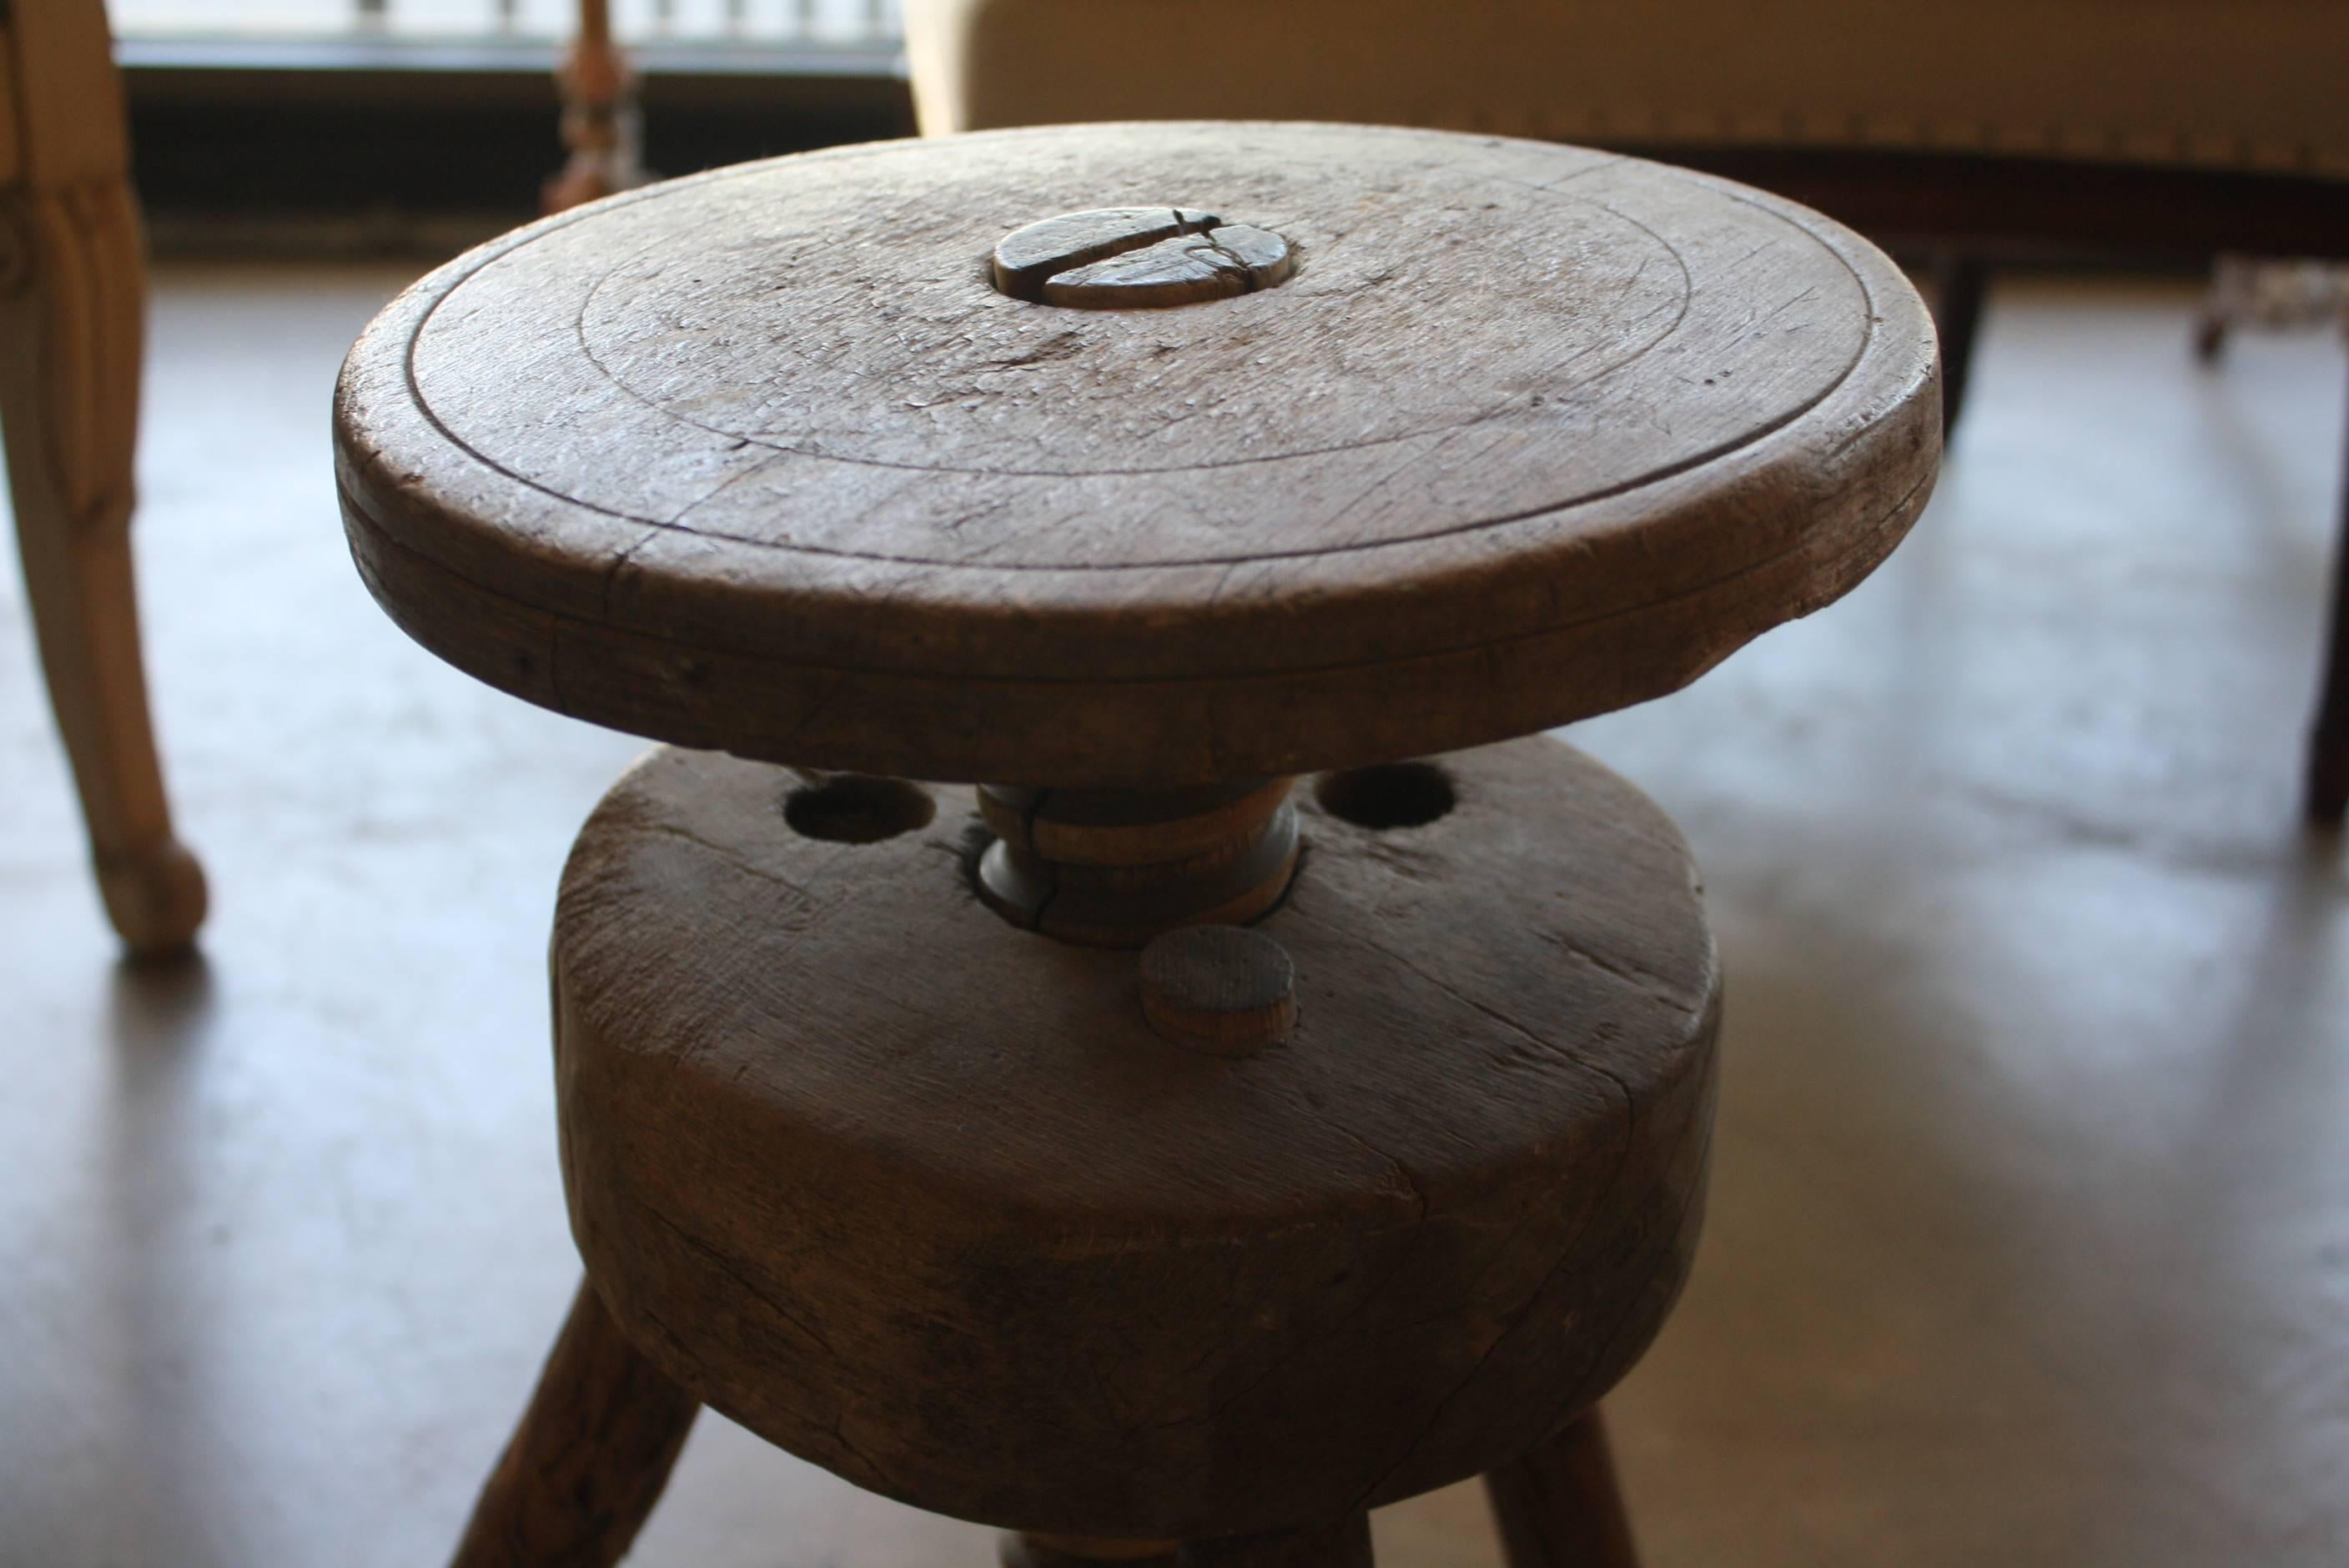 artist stool adjustable